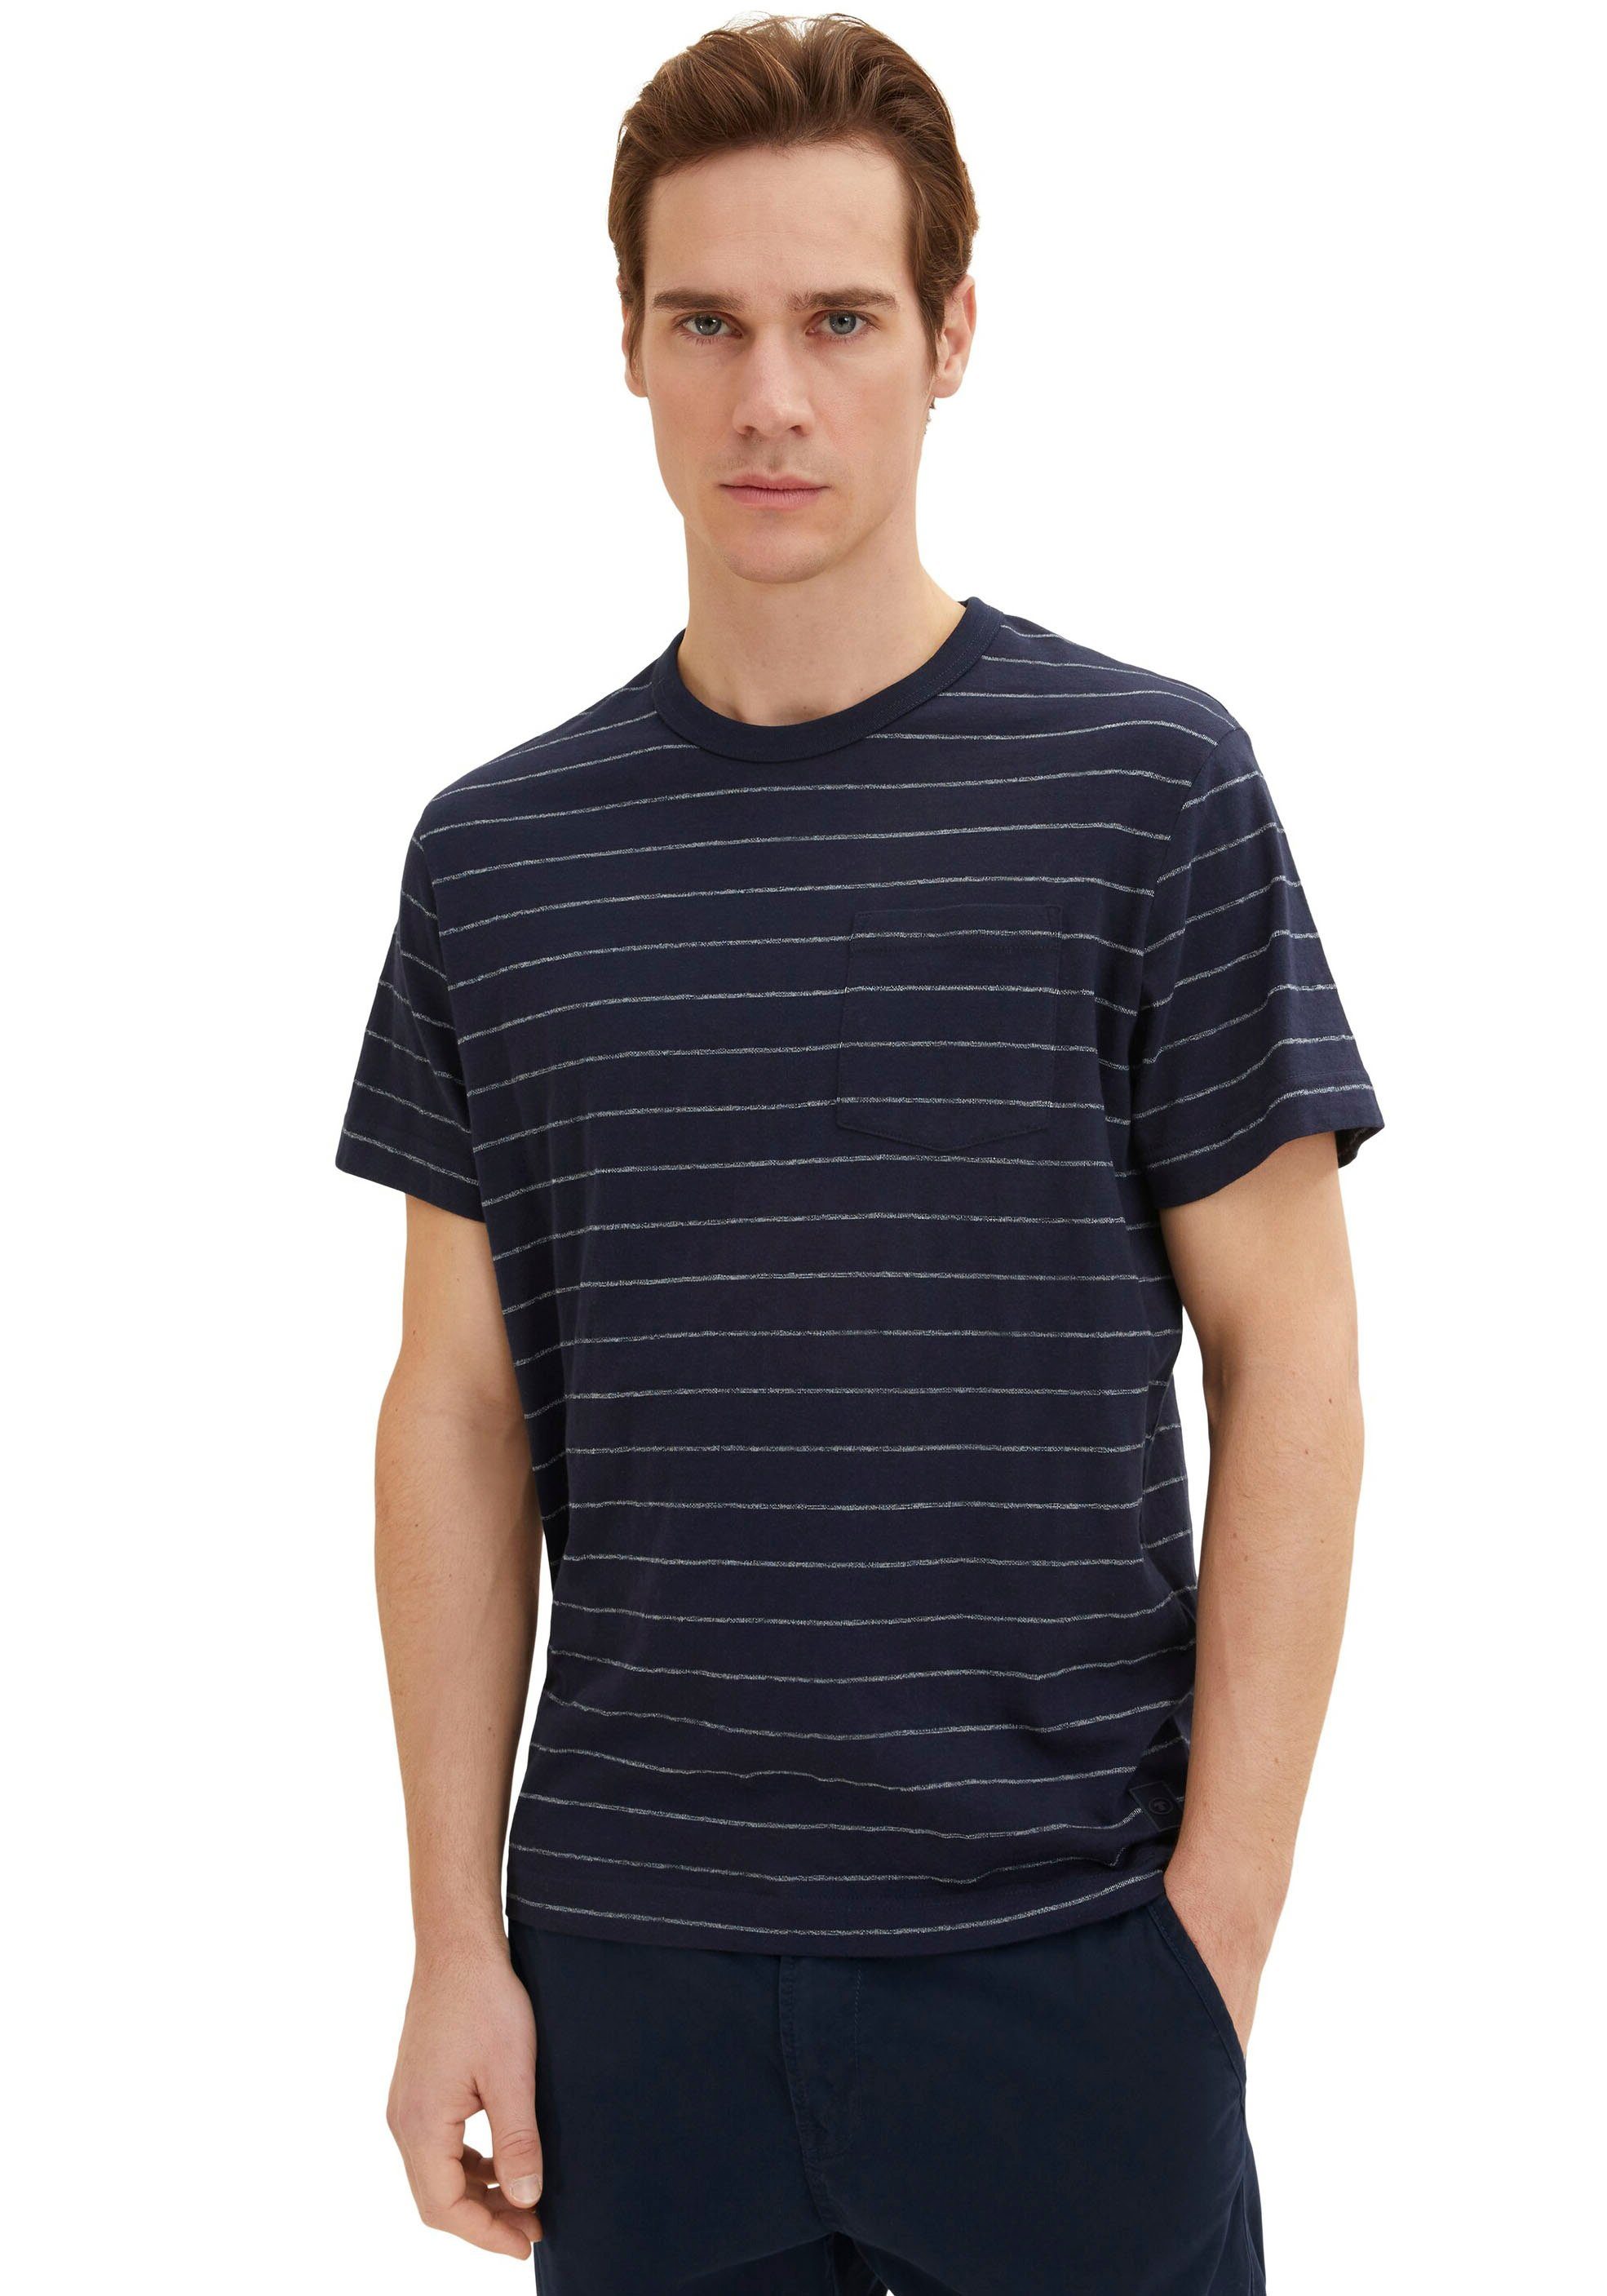 Tom TAILOR T-Shirt, von Baumwolle aus Brusttasche T-Shirt TOM mit Tailor